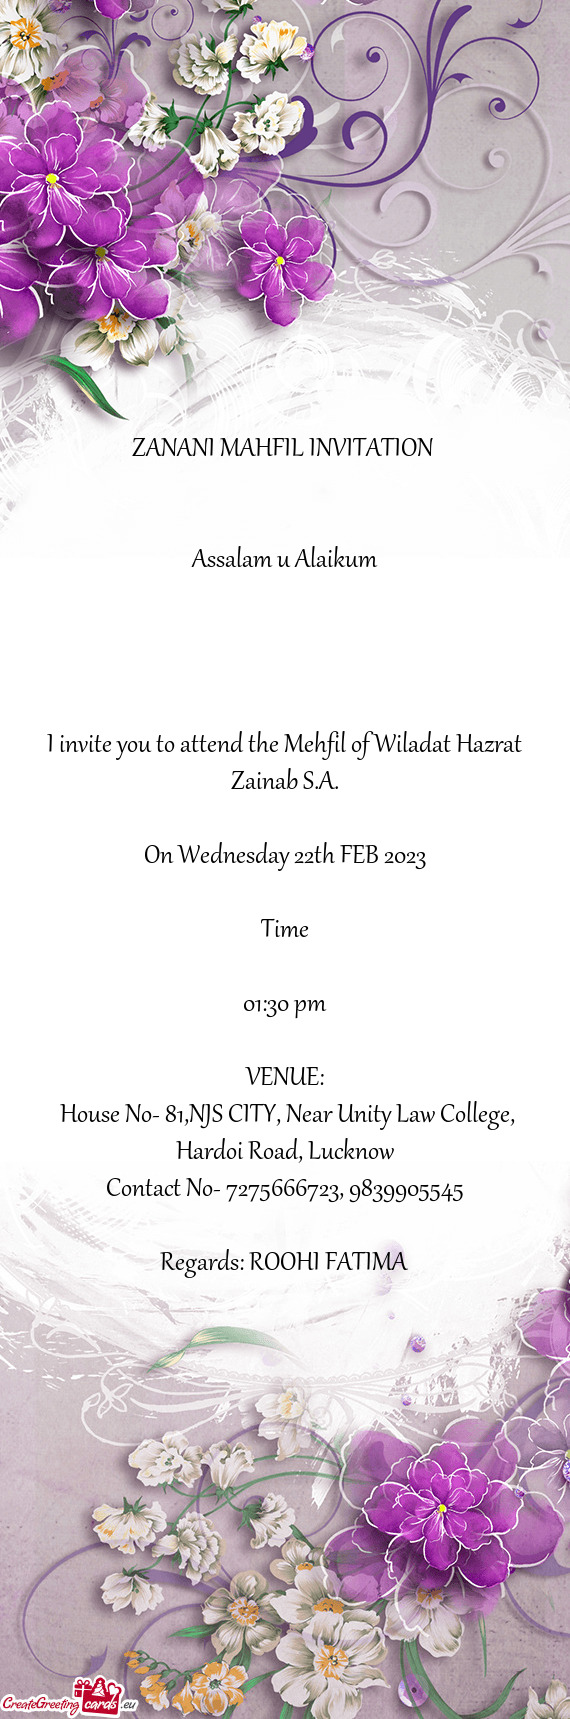 ZANANI MAHFIL INVITATION